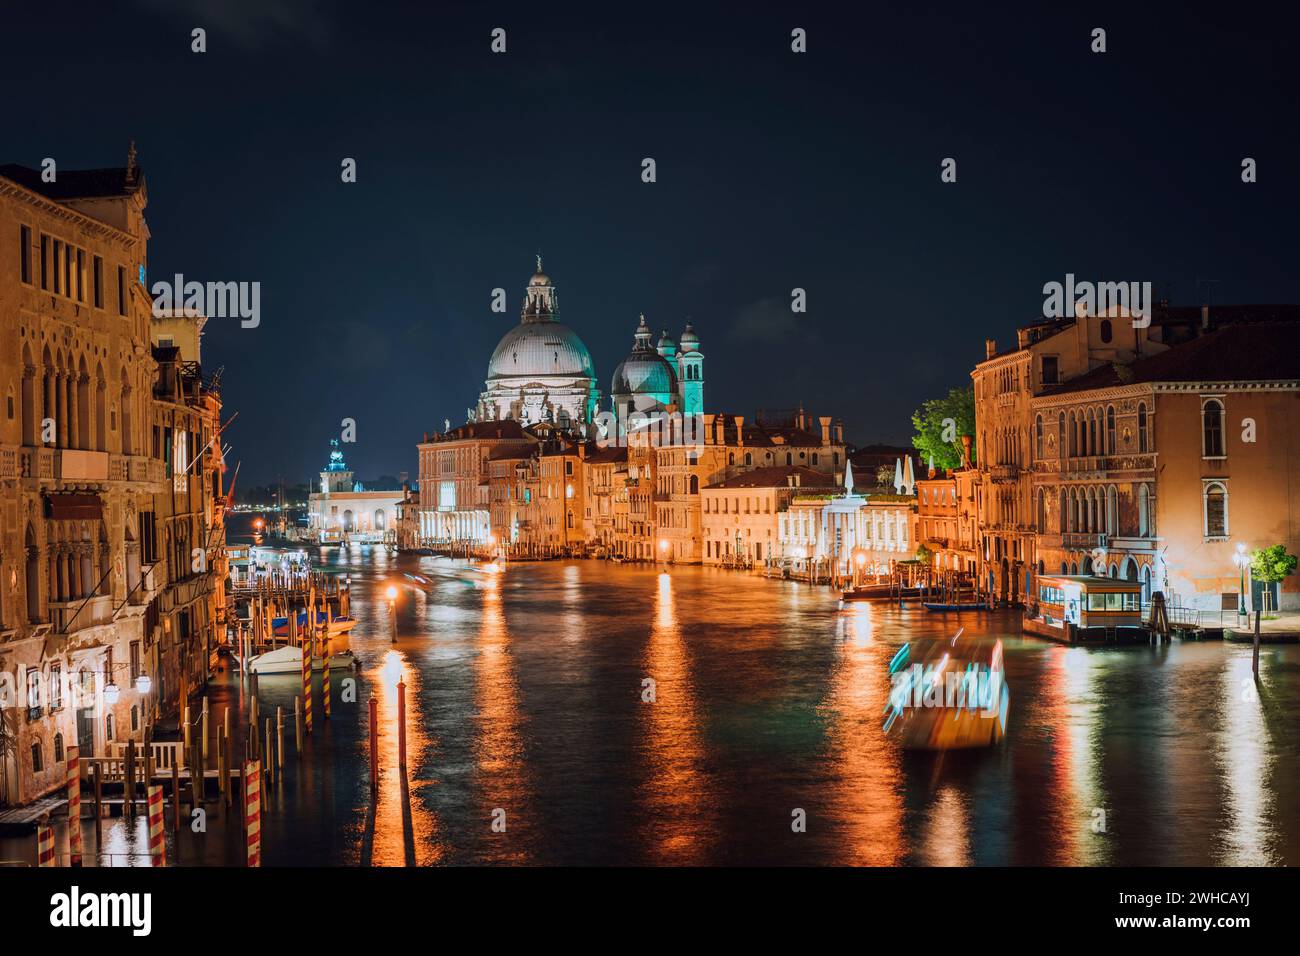 Venezia, Italia. Canal Grande di notte. Luce di illuminazione riflessa sulla superficie dell'acqua. Maestosa Basilica di Santa Maria della Salute sullo sfondo. Foto Stock